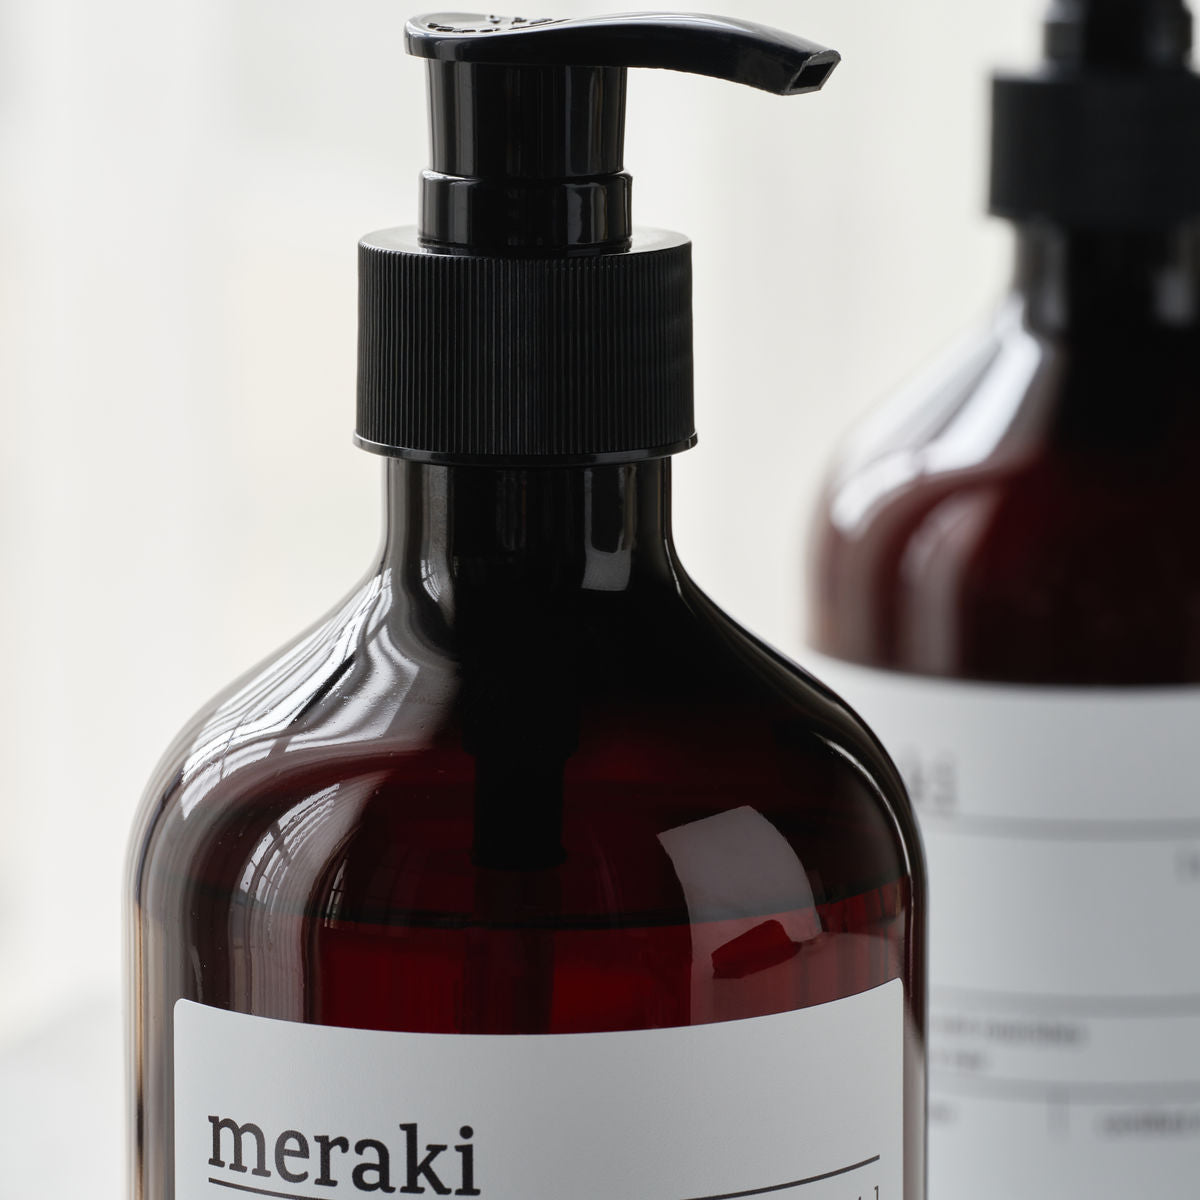 Shampoo Meraki, puro base